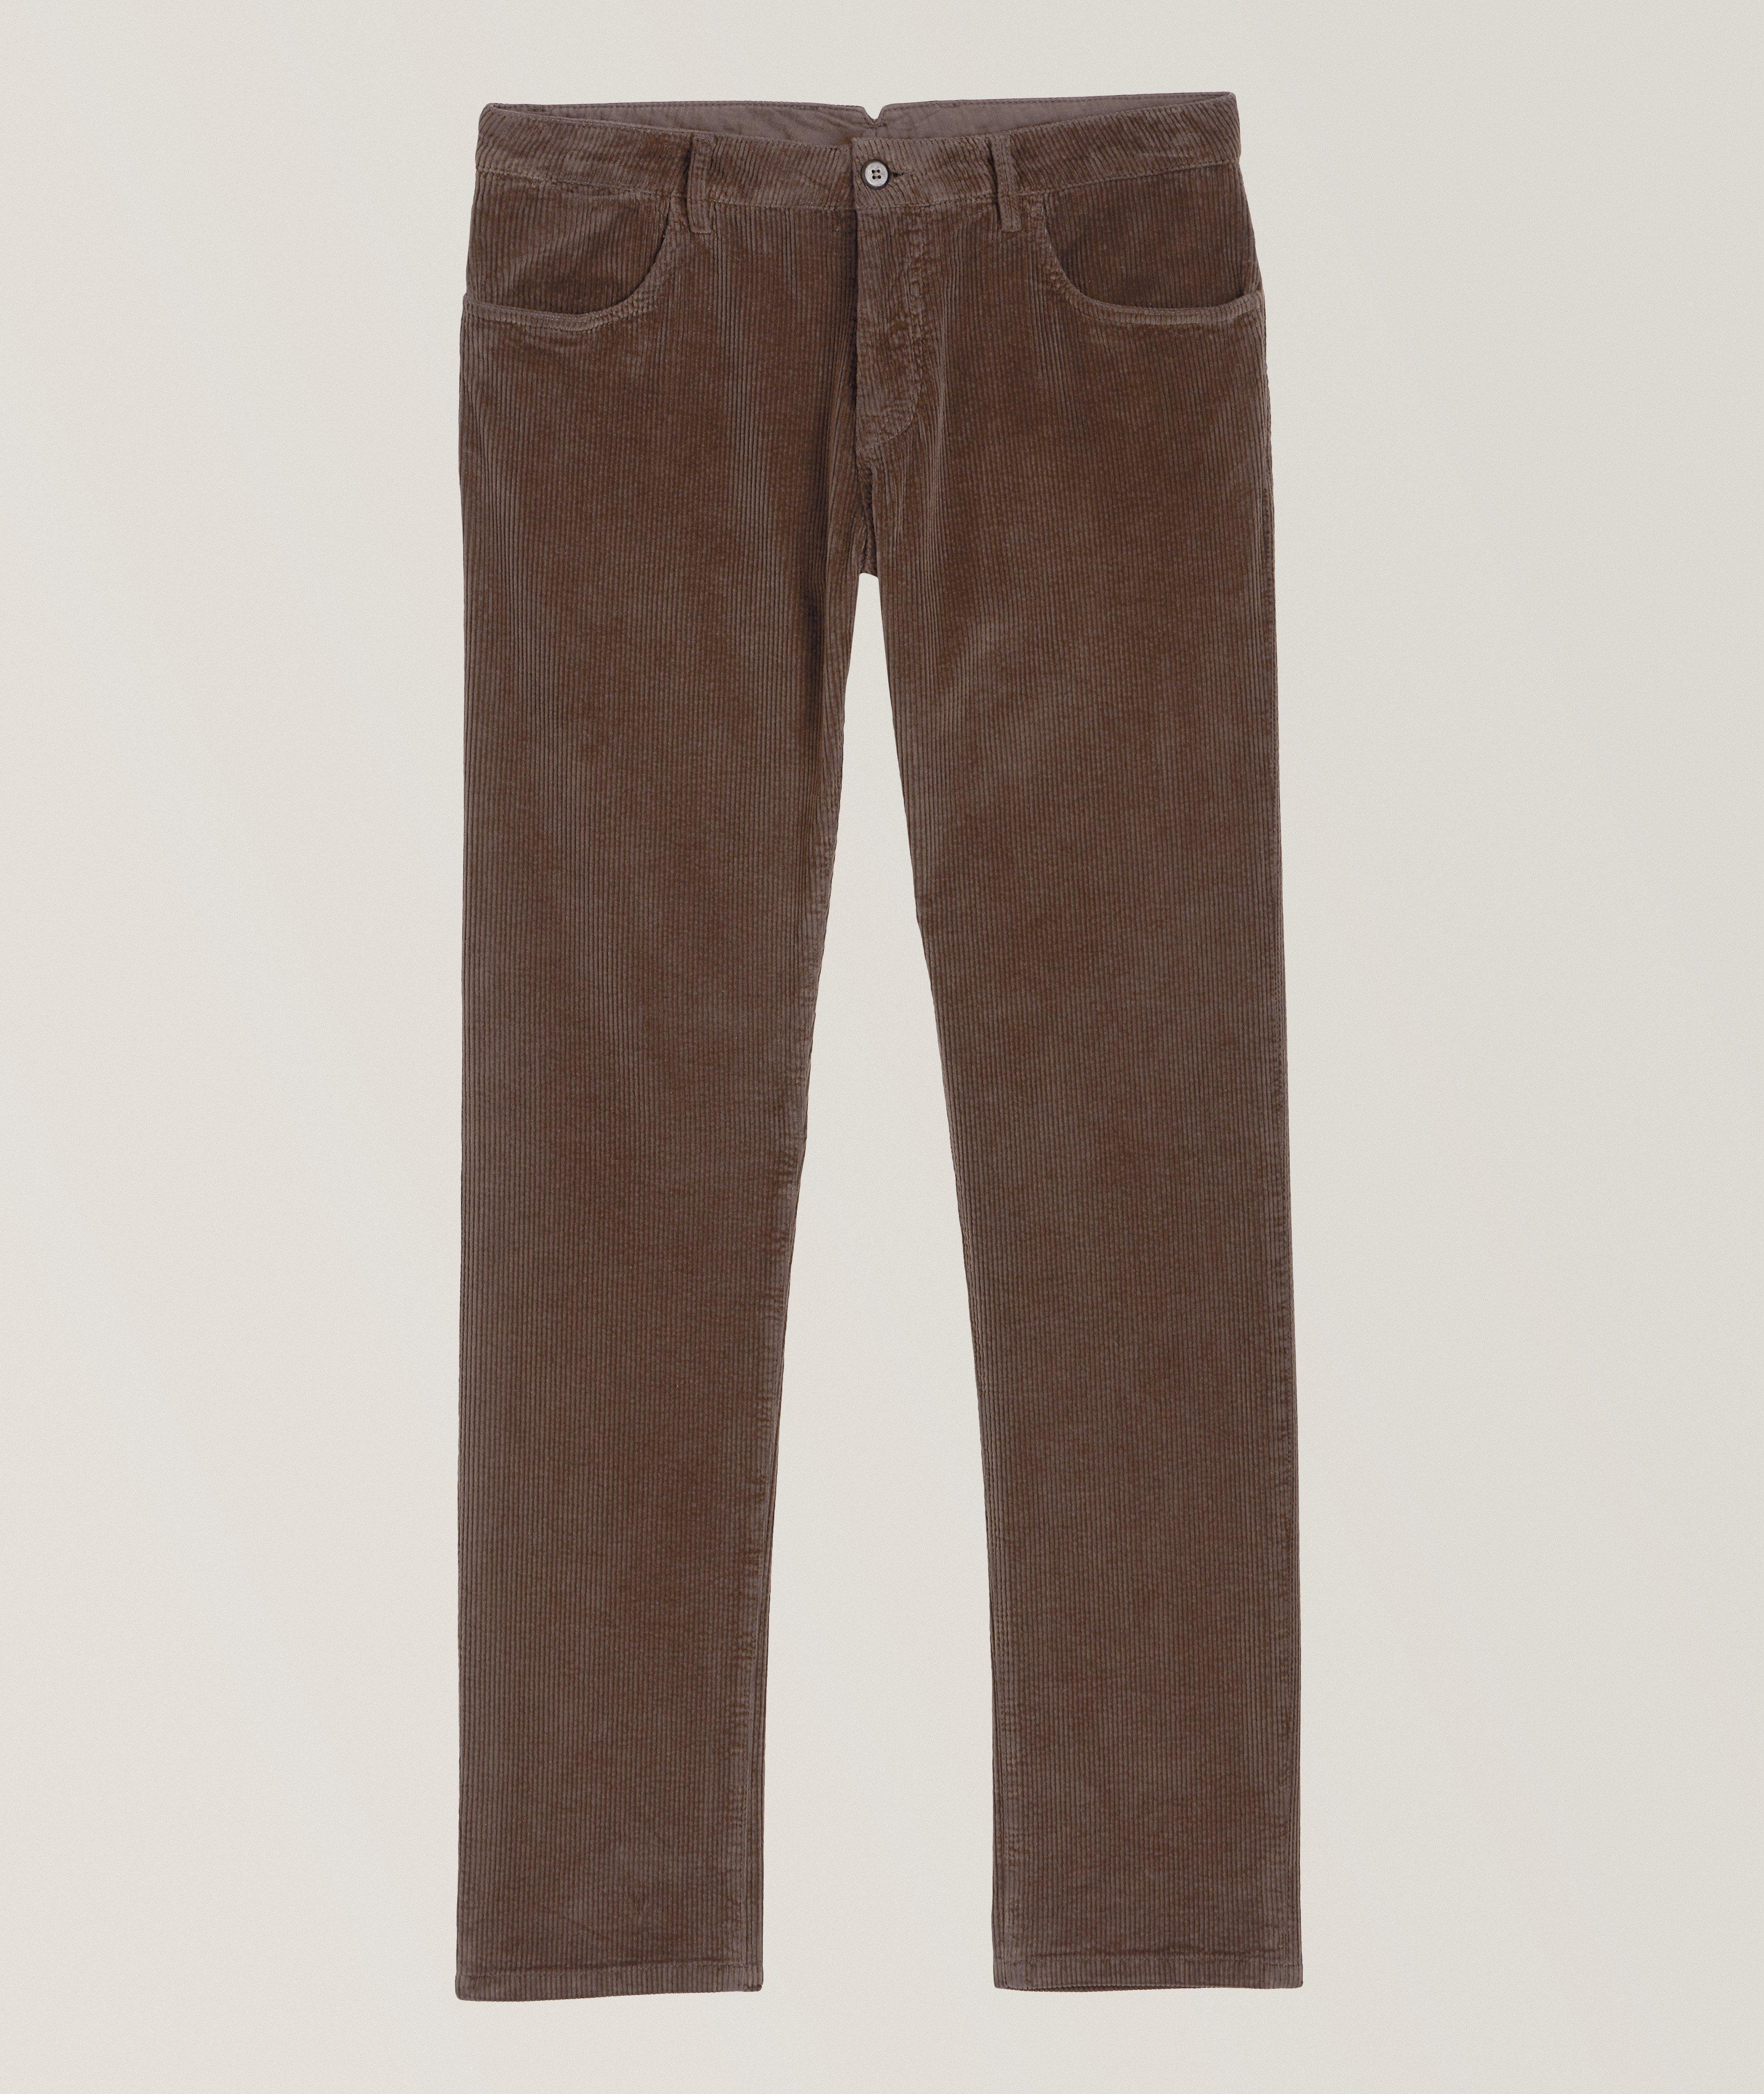 Corduroy Cotton-Blend Pants image 0